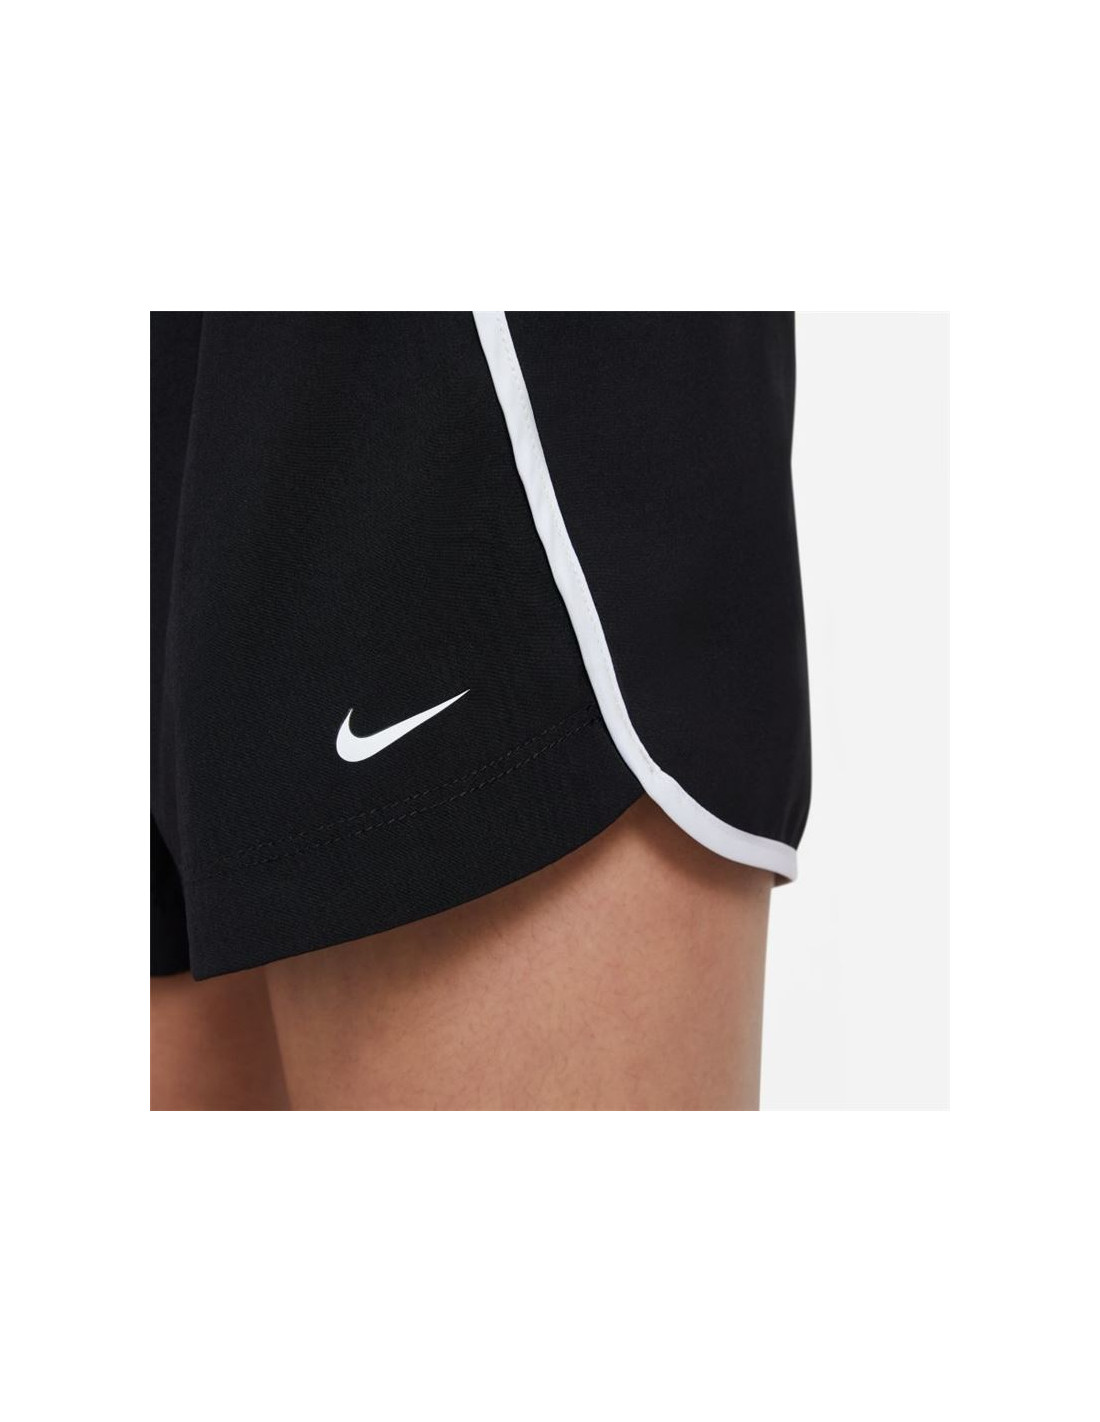 Nike Dri Fit Sprinter Short Pants Black